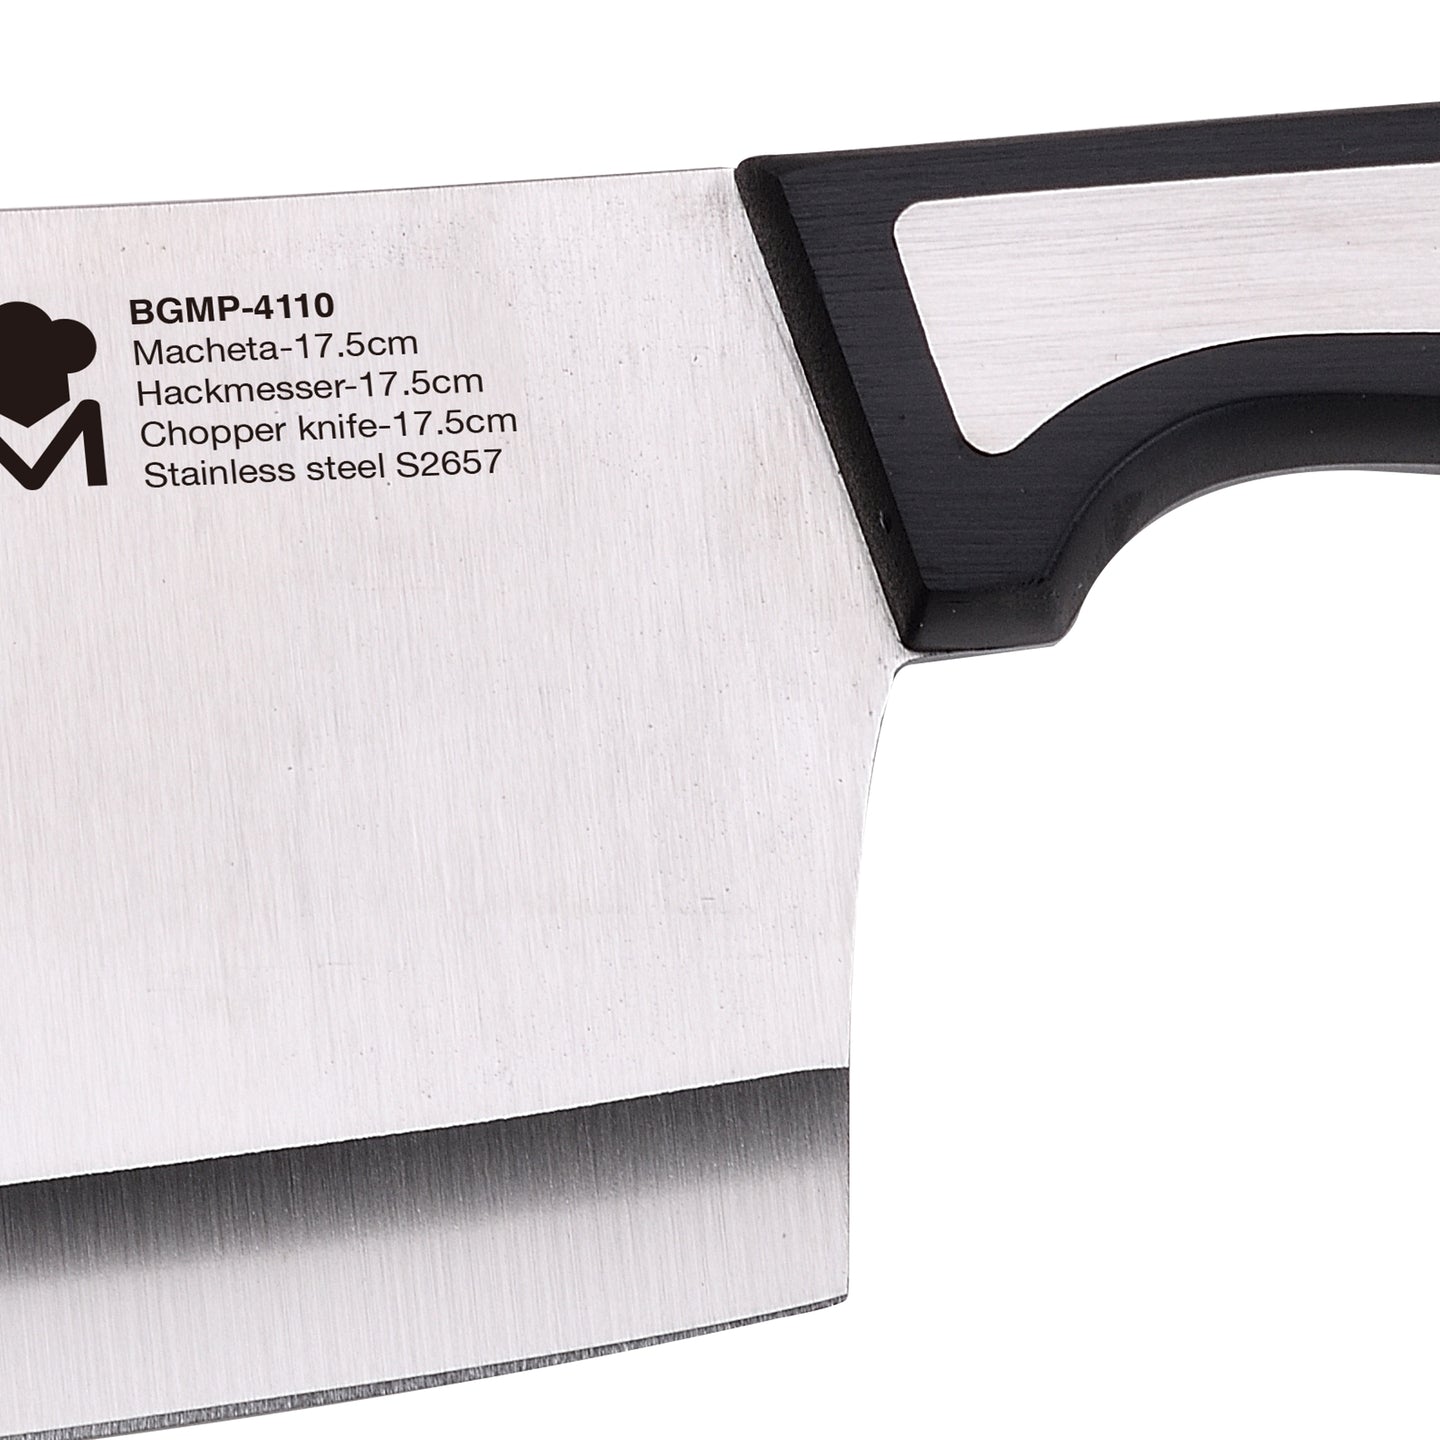 Cuchillo macheta MasterPRO 17.5 cm - Sharp (2)